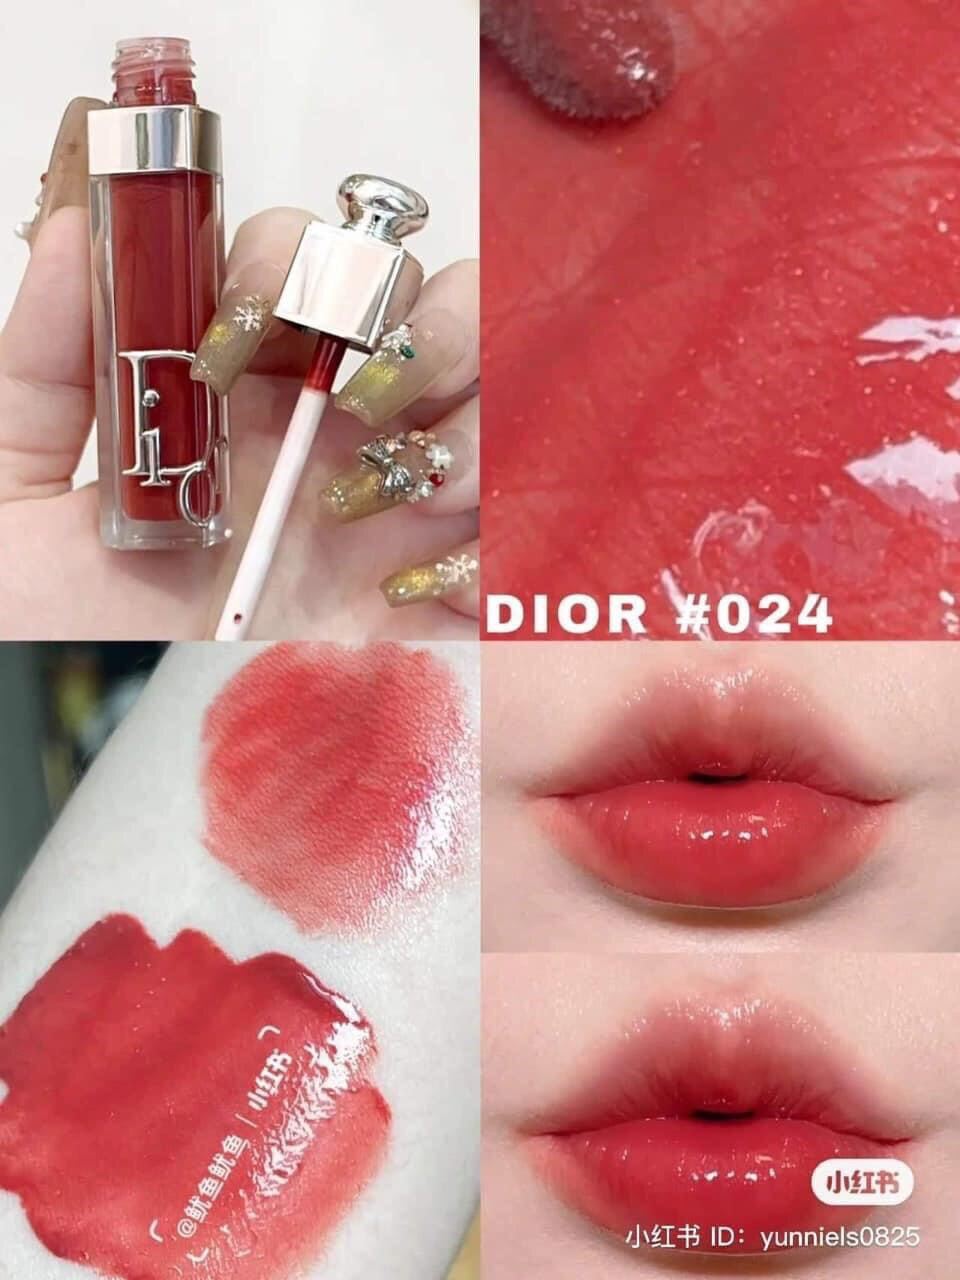 Son Dưỡng Dior Addict Lip Maximizer Collagen 020  Màu Đỏ Nâu  Vilip Shop   Mỹ phẩm chính hãng